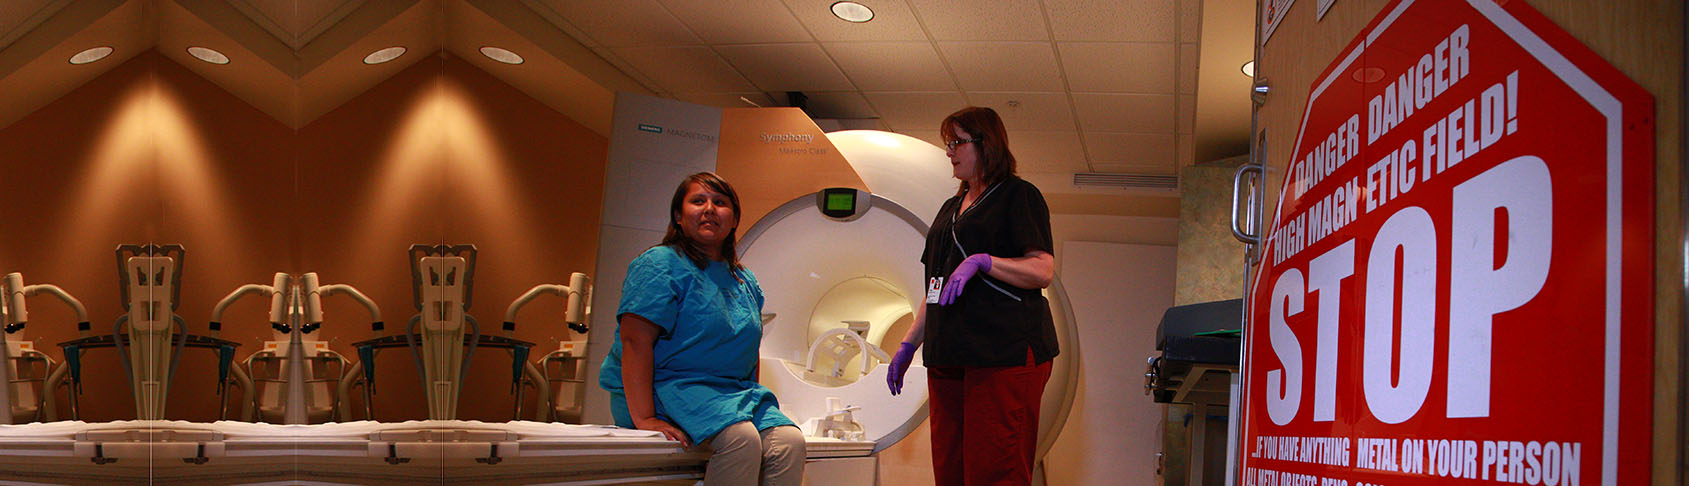 MRI検査の準備をしている医師と患者